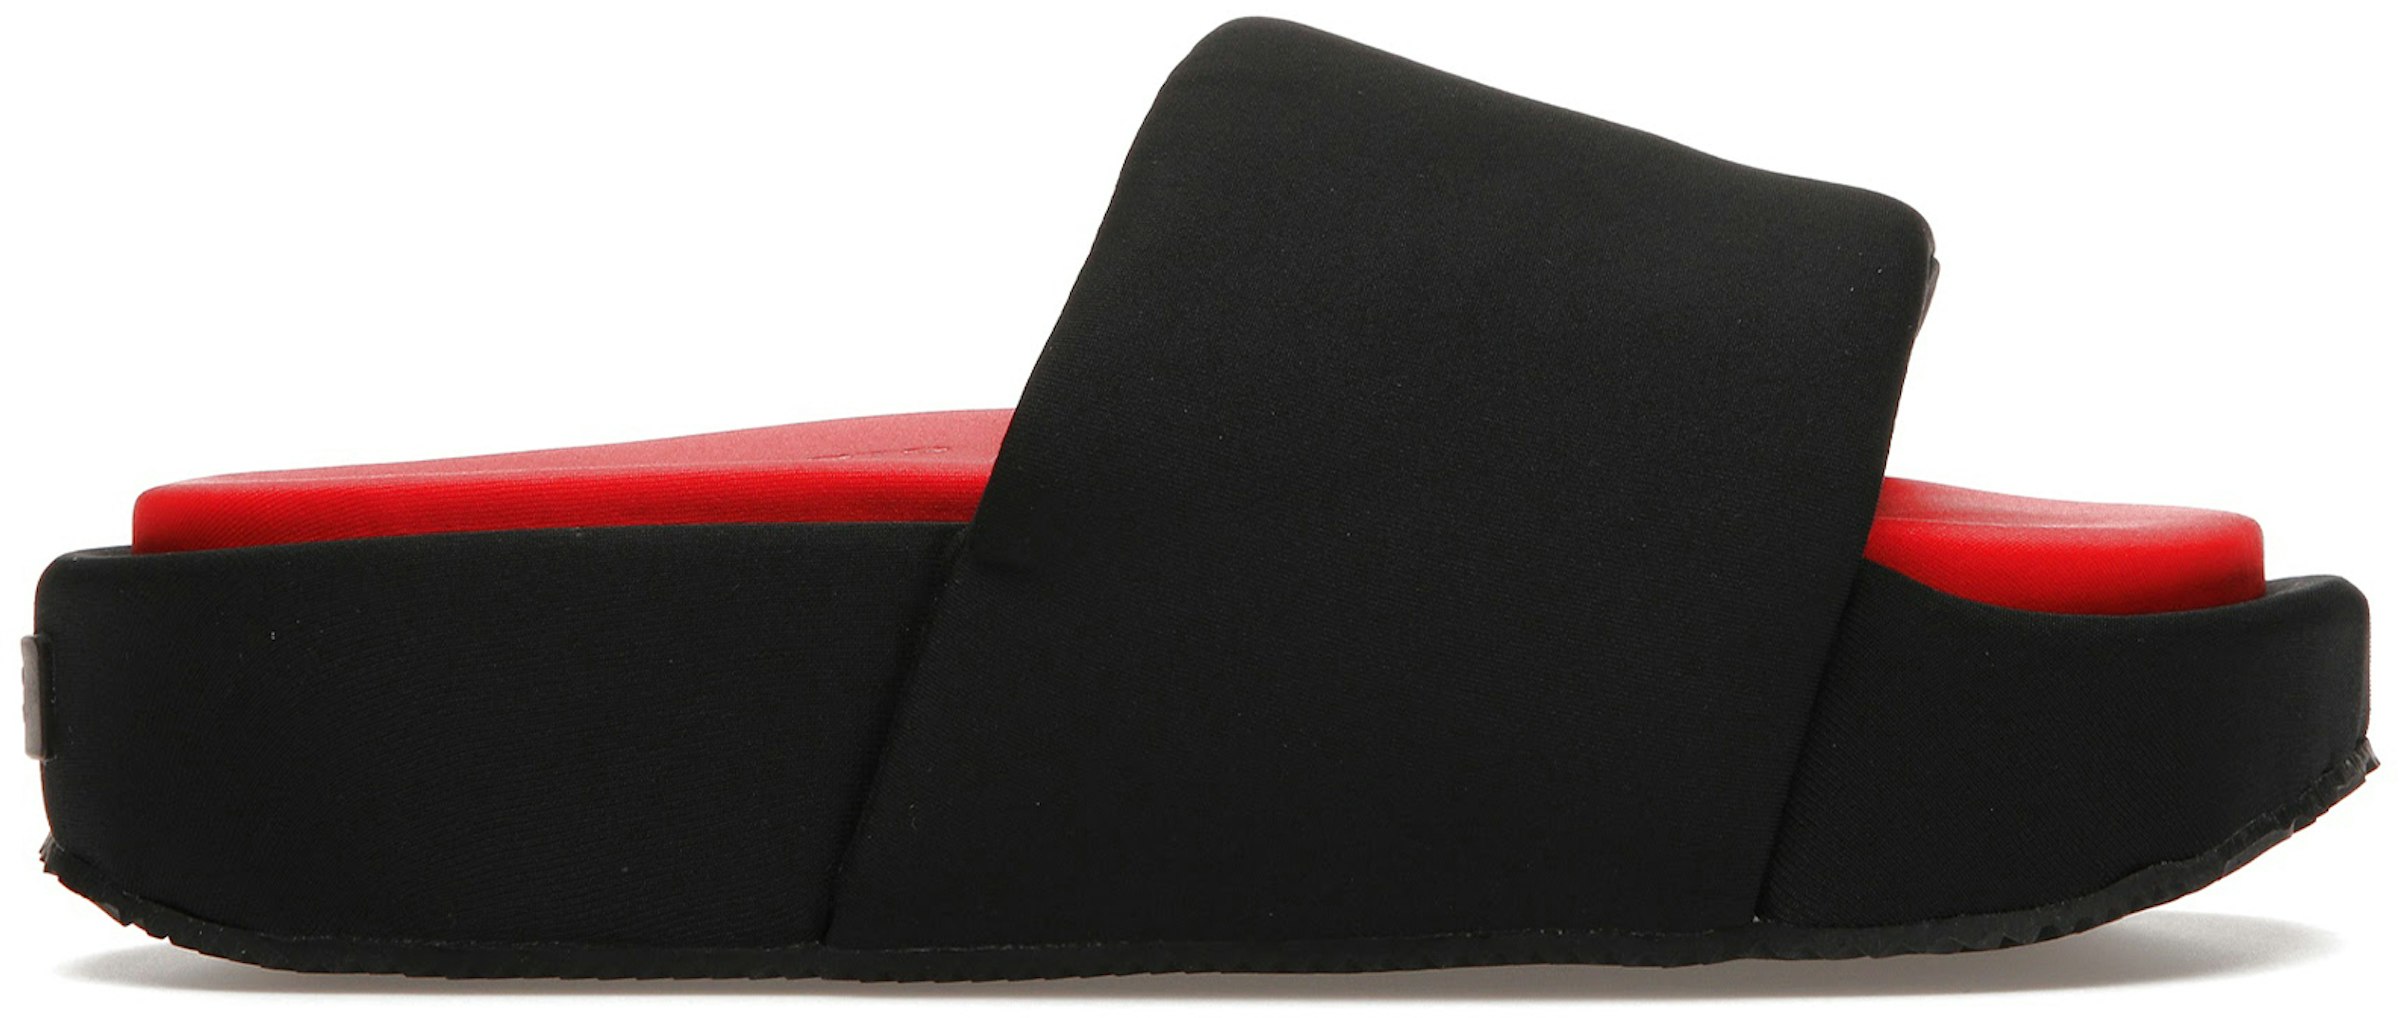 Addition Prøv det Du bliver bedre adidas Y-3 Slide Black Red Men's - FZ4505 - US